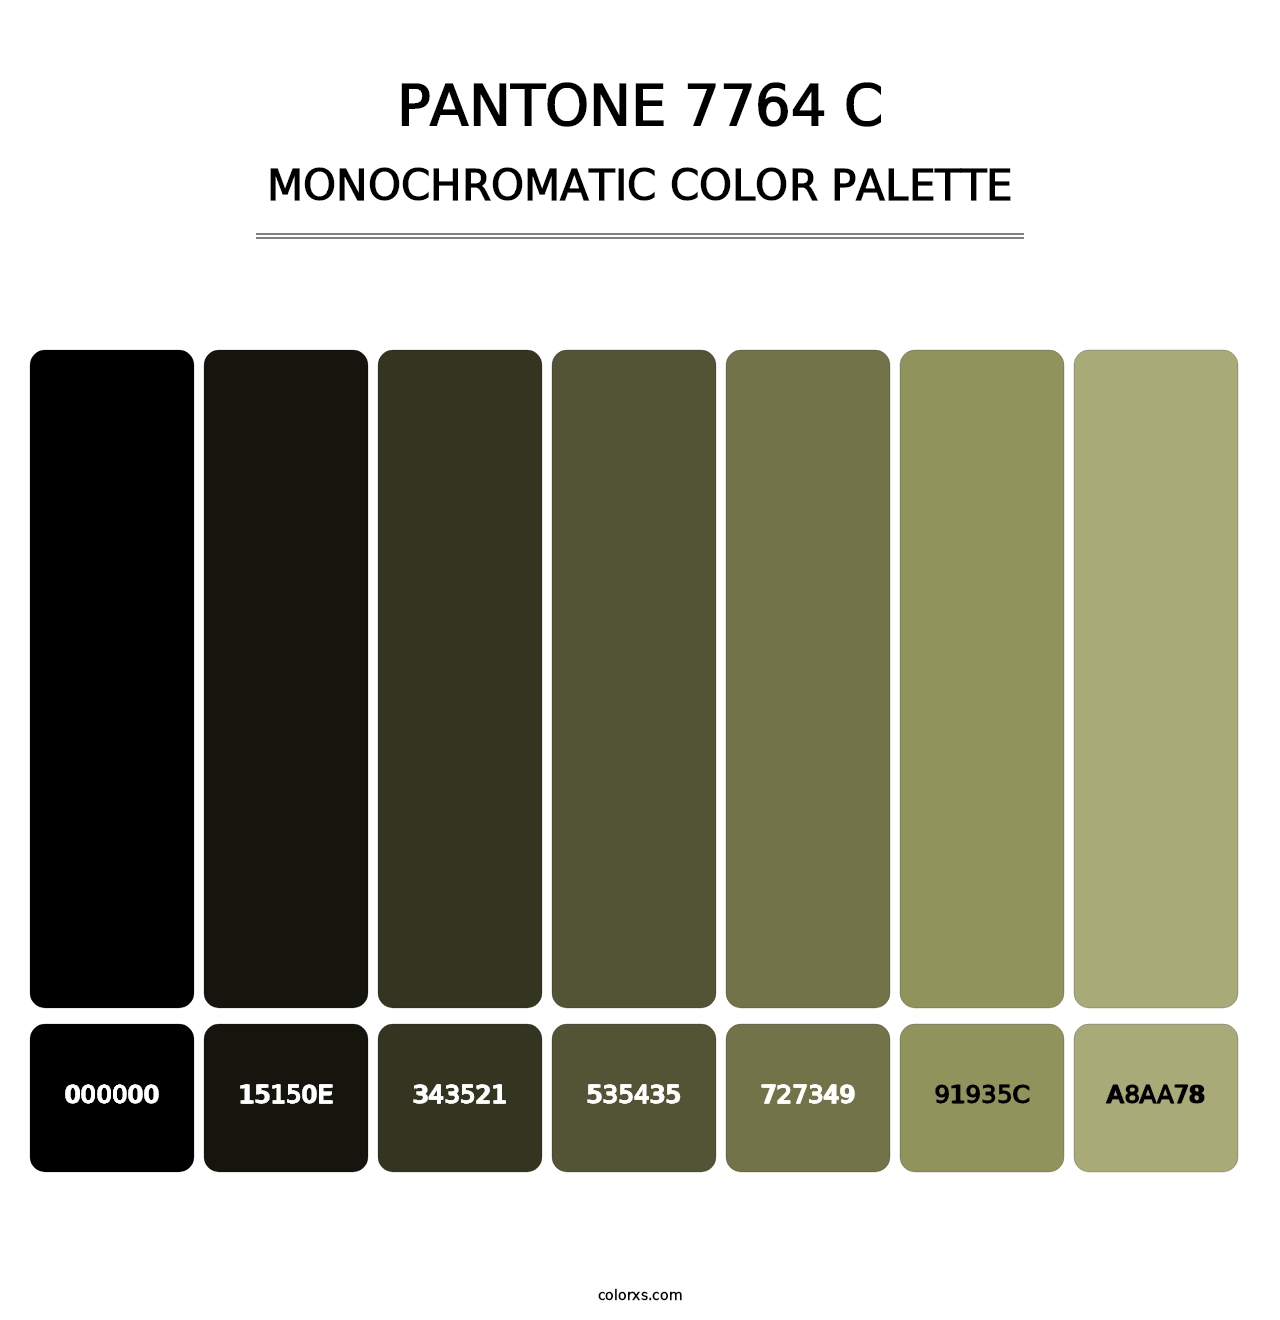 PANTONE 7764 C - Monochromatic Color Palette